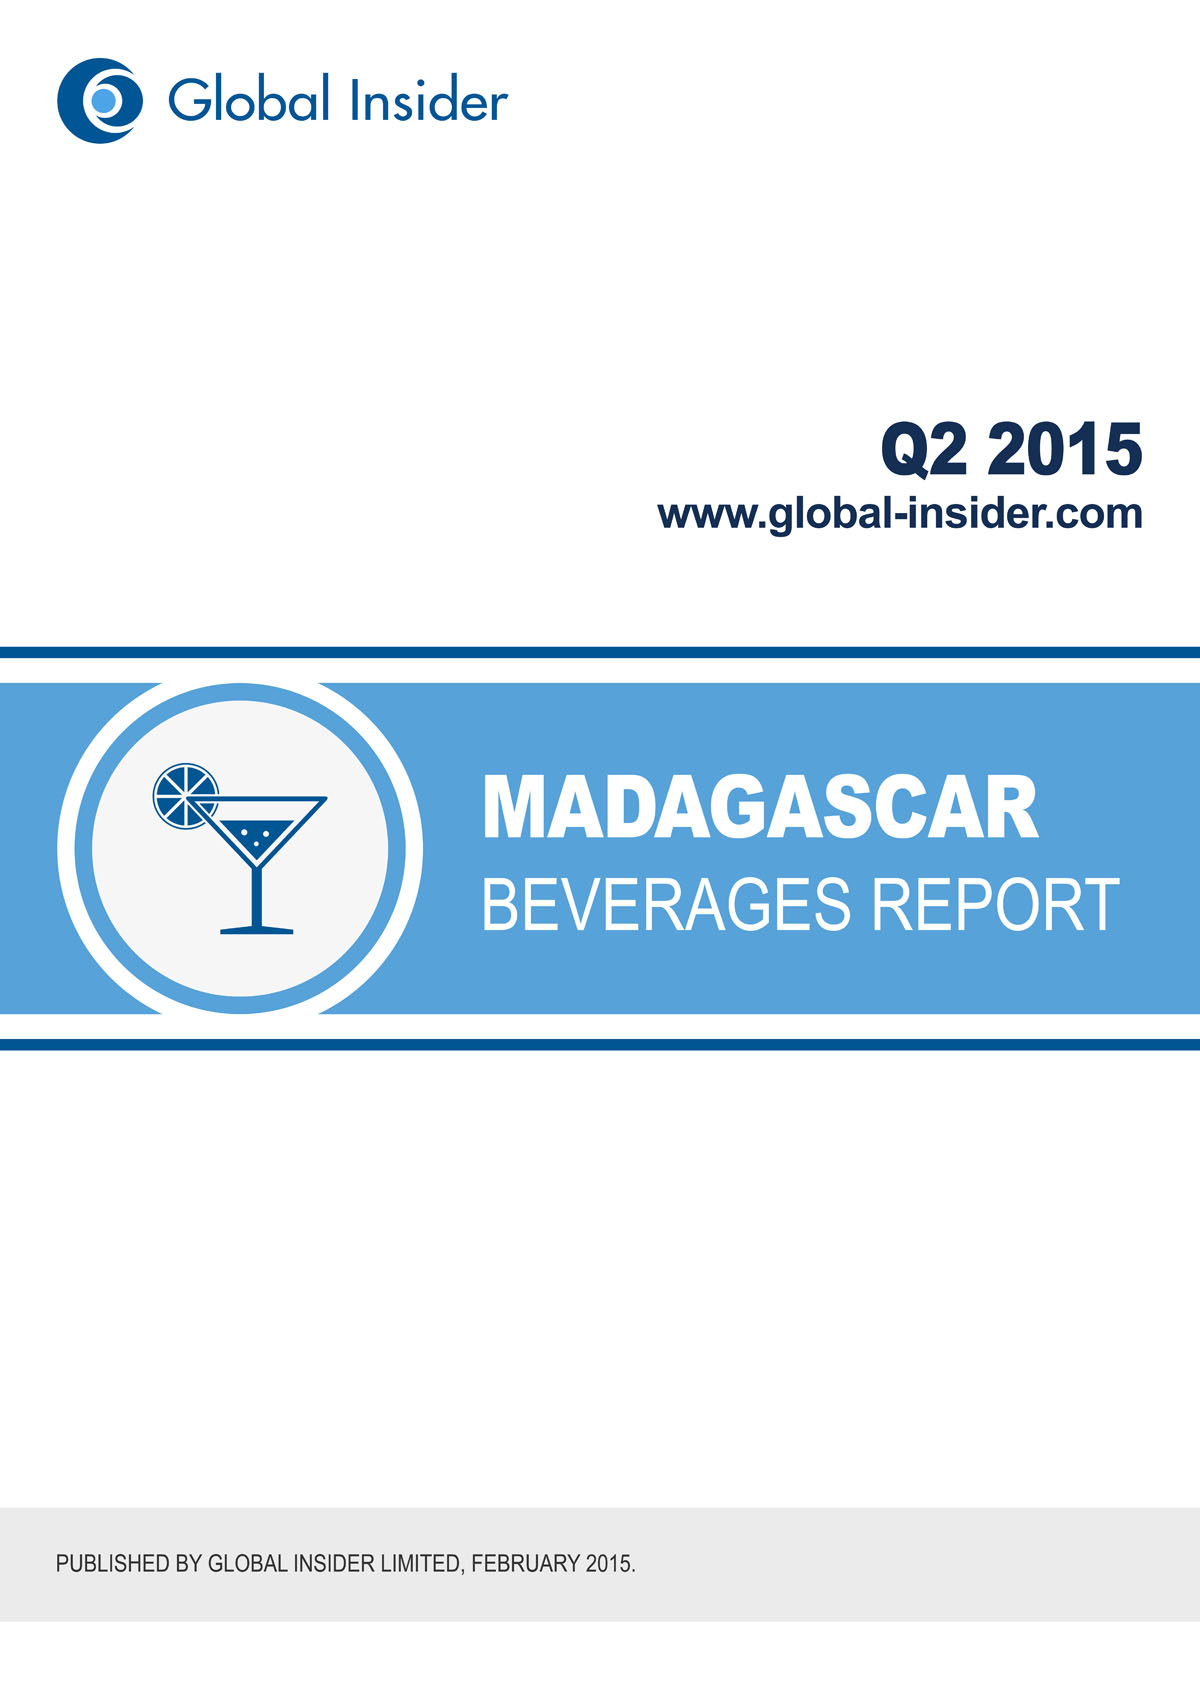 Madagascar Beverages Report